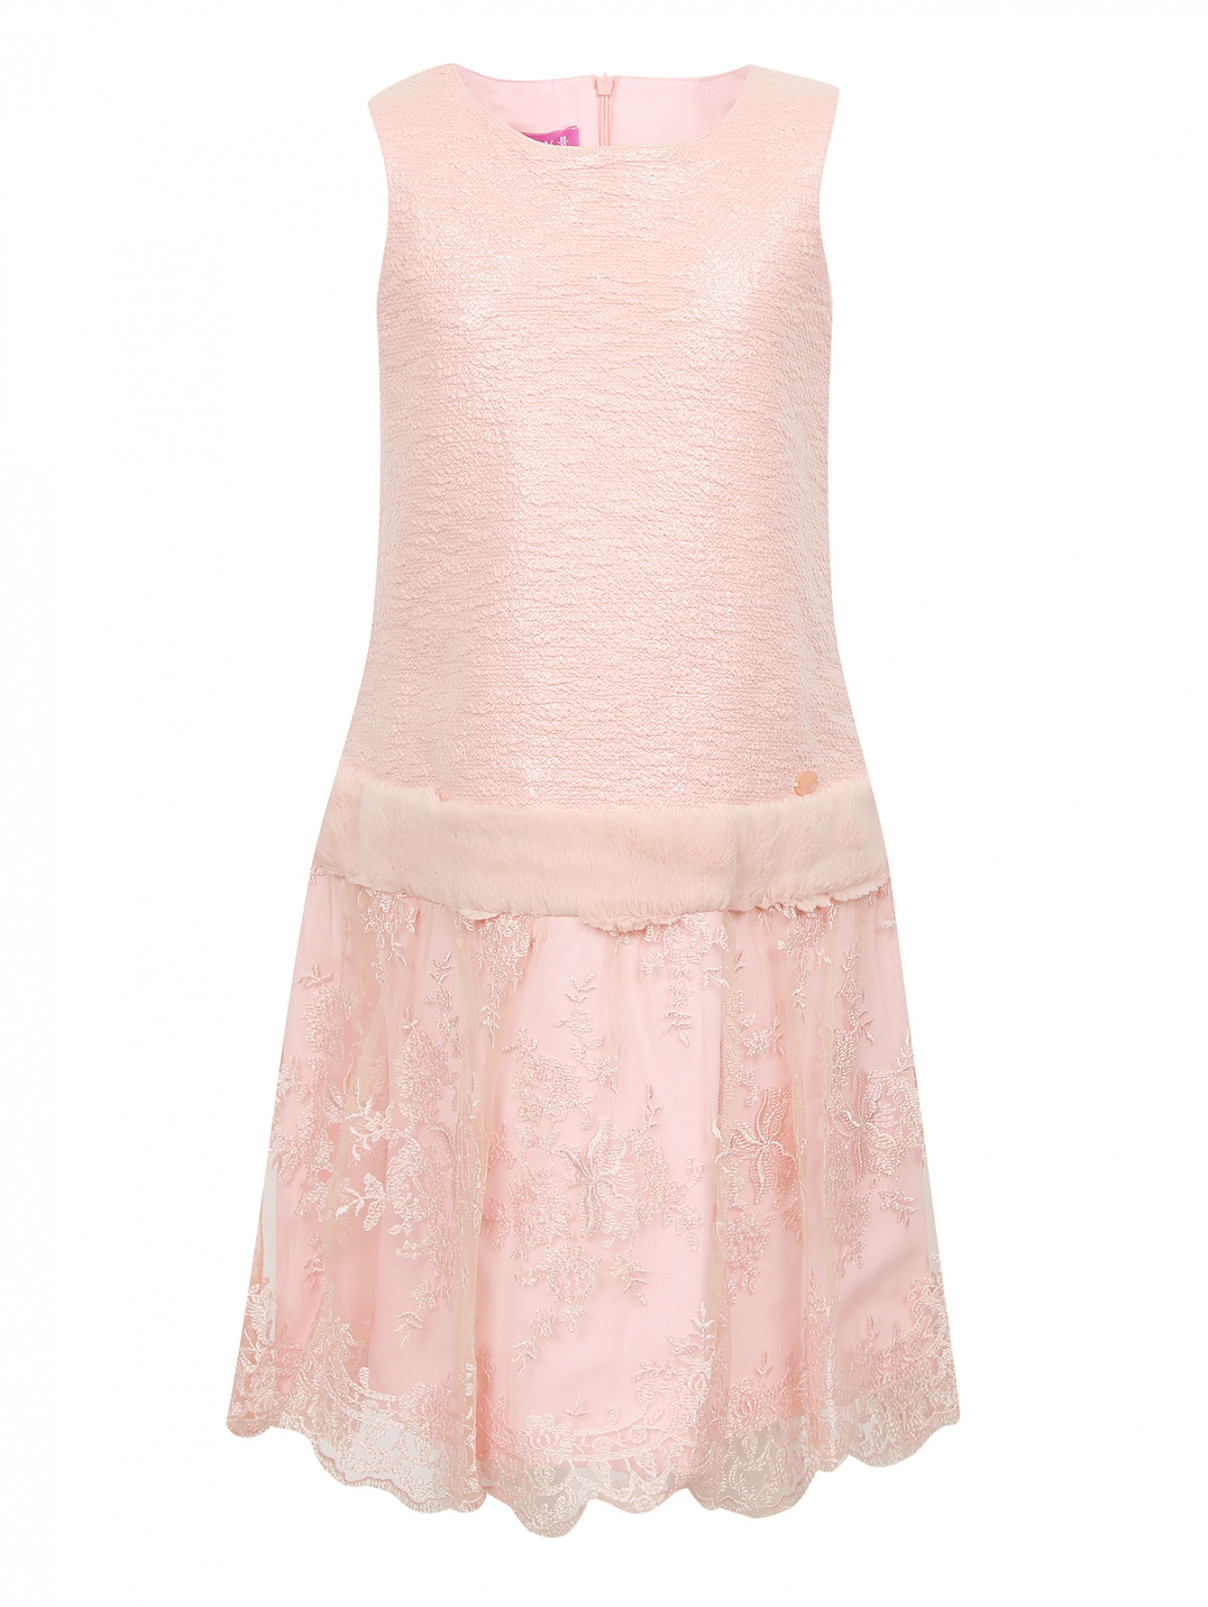 Платье с кружевной юбкой и отделкой мехом Val Max  –  Общий вид  – Цвет:  Розовый